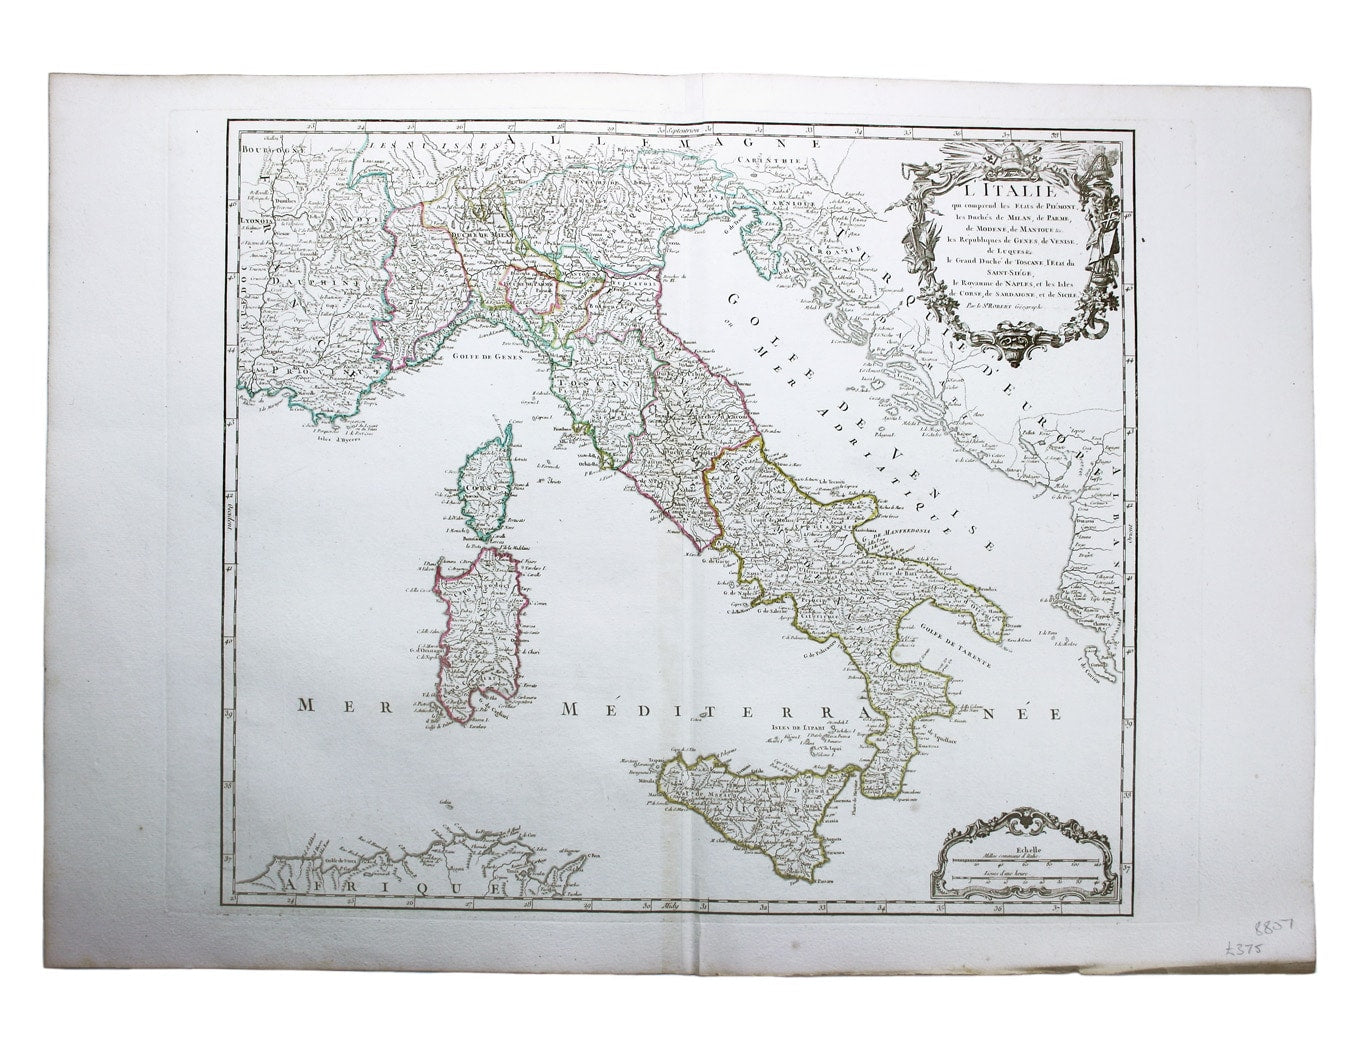 Robert de Vaugondy’s Map of Italy